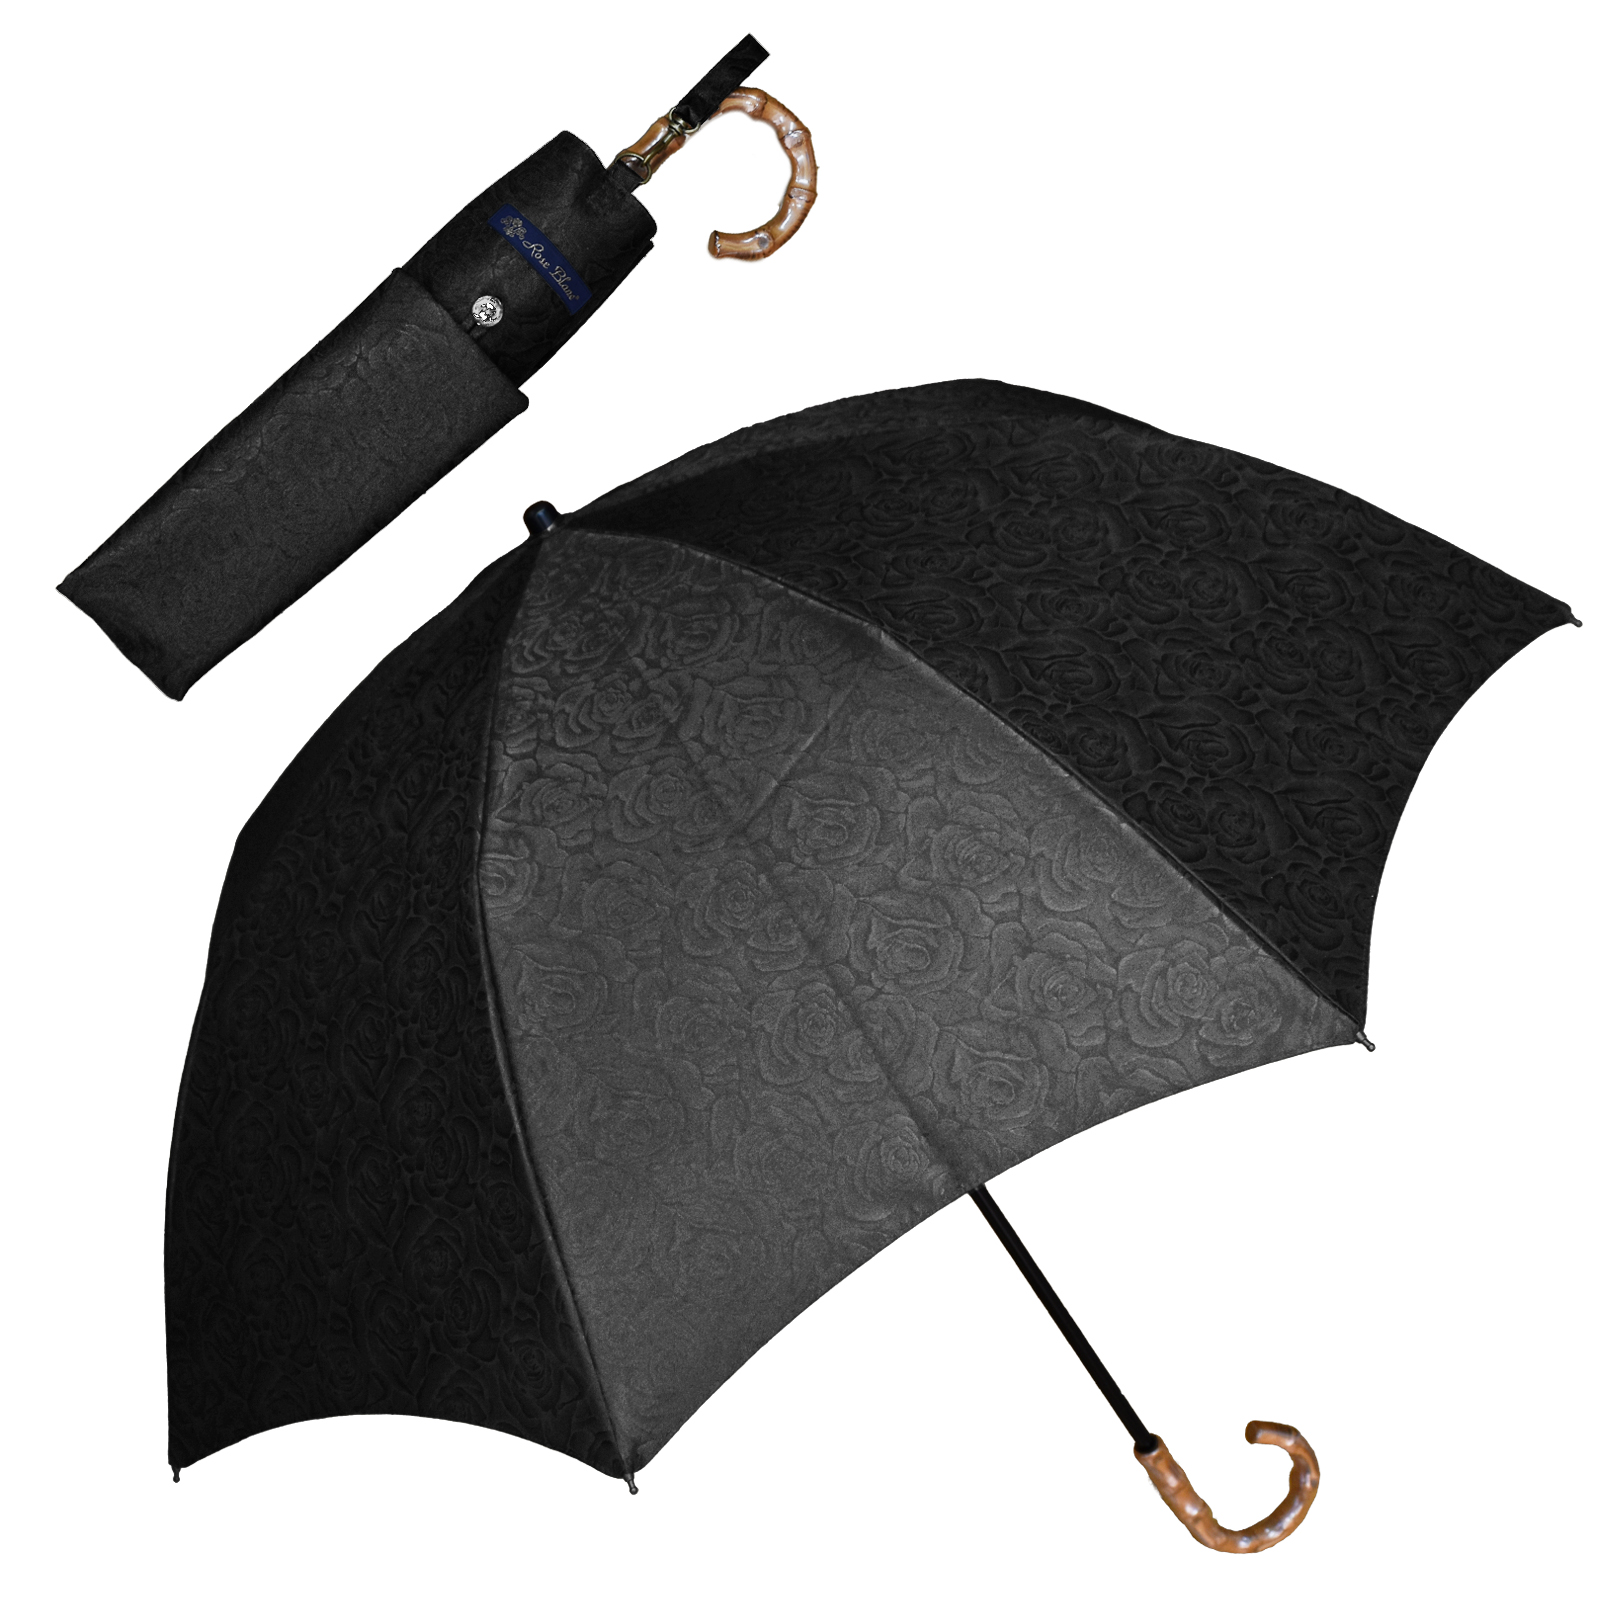 日傘 完全遮光 折りたたみ uv 晴雨兼用 軽量 涼しい おしゃれ 2段 折りたたみ傘 100% プ...